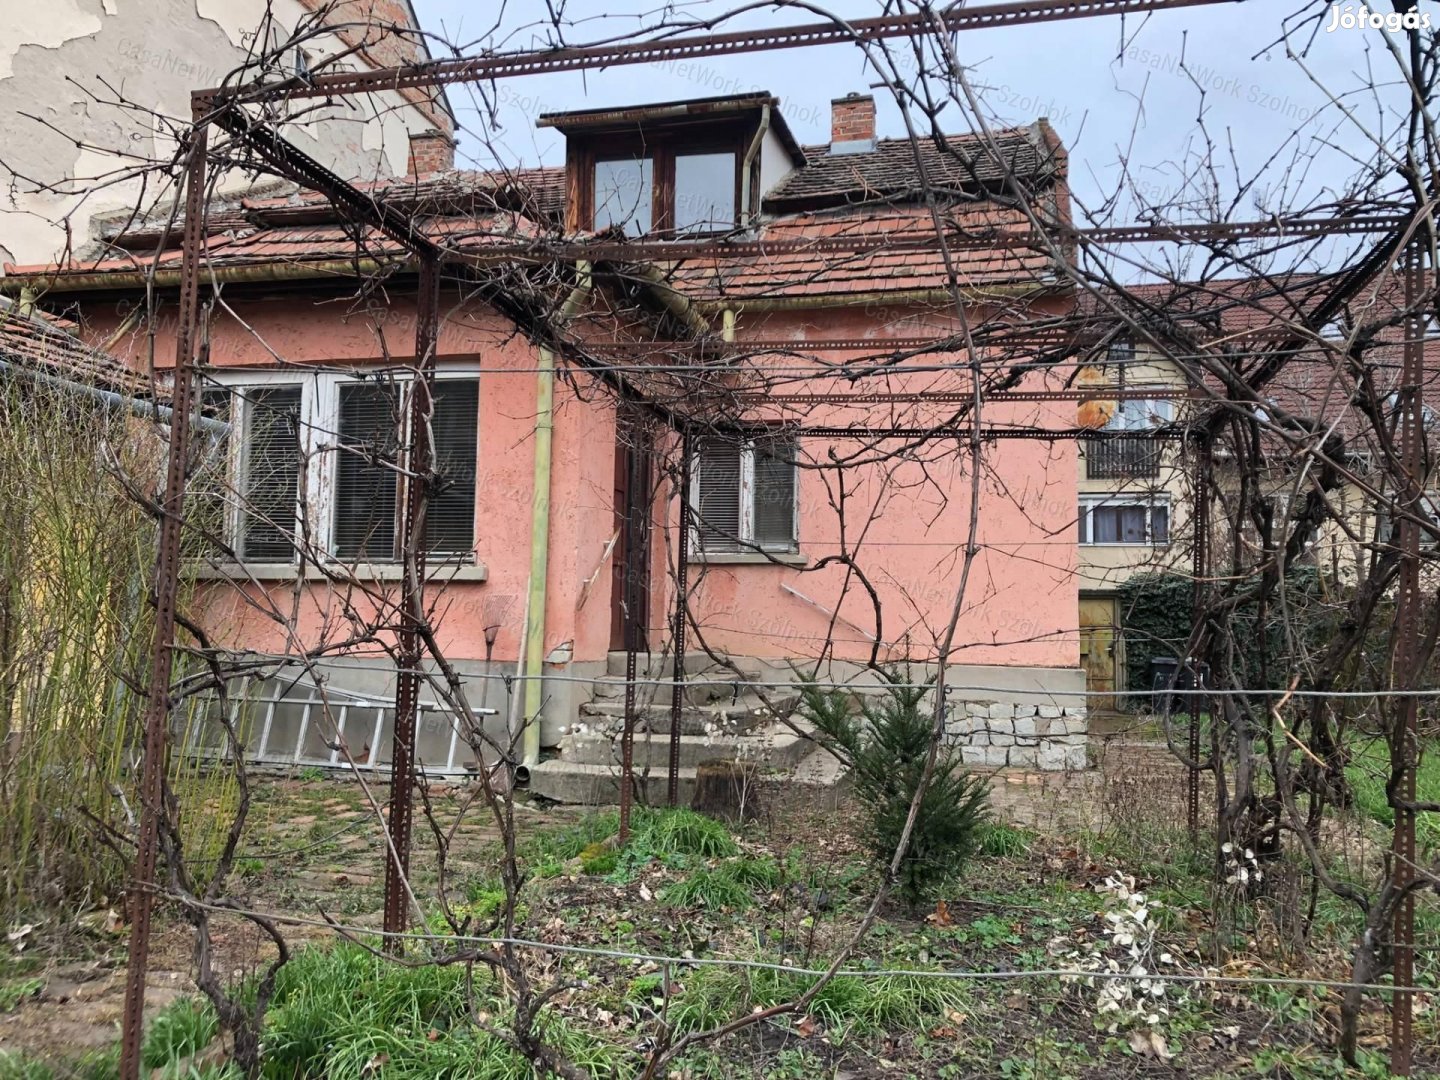 Eladó Szolnok belvárosában kétgenerációs felújítandó családi ház